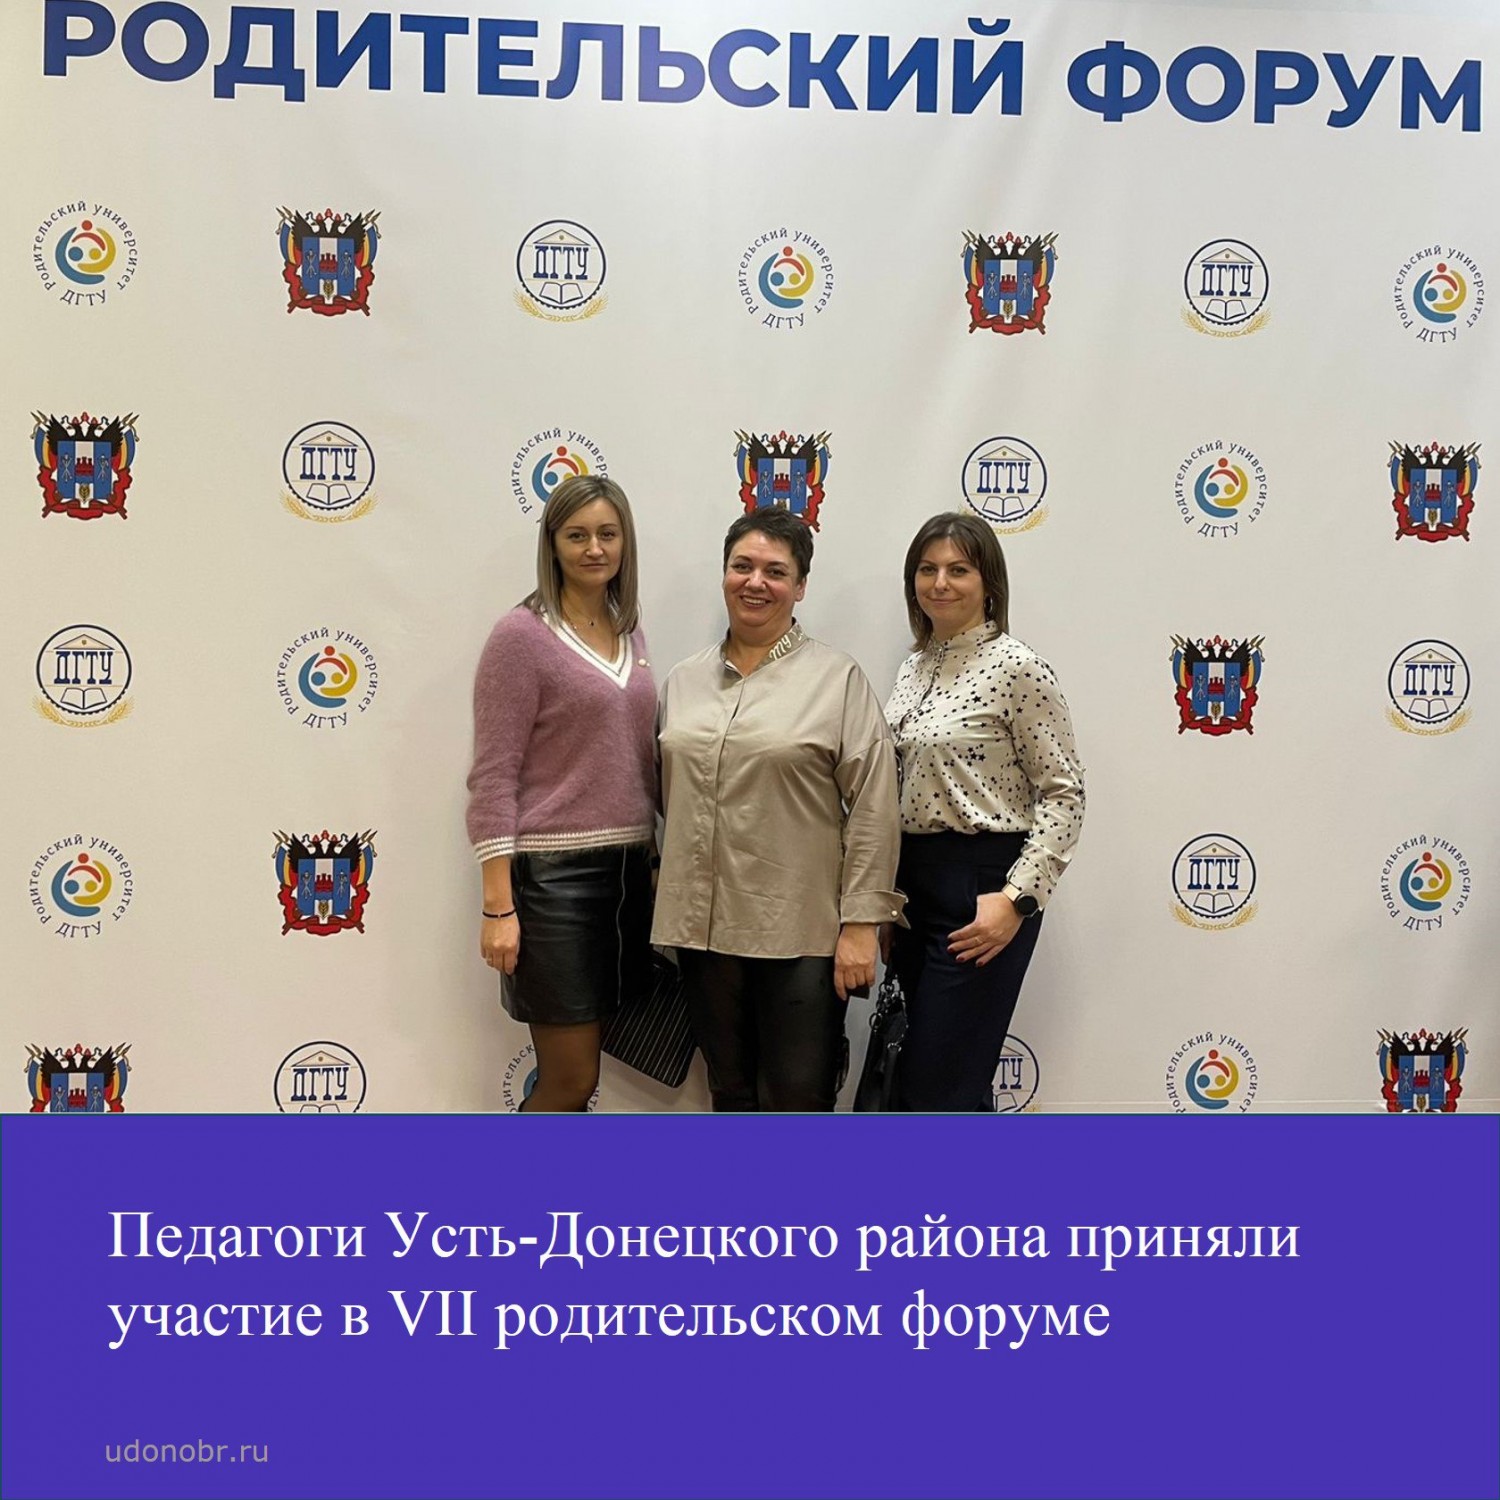 Педагоги Усть-Донецкого района приняли участие в VII родительском форуме